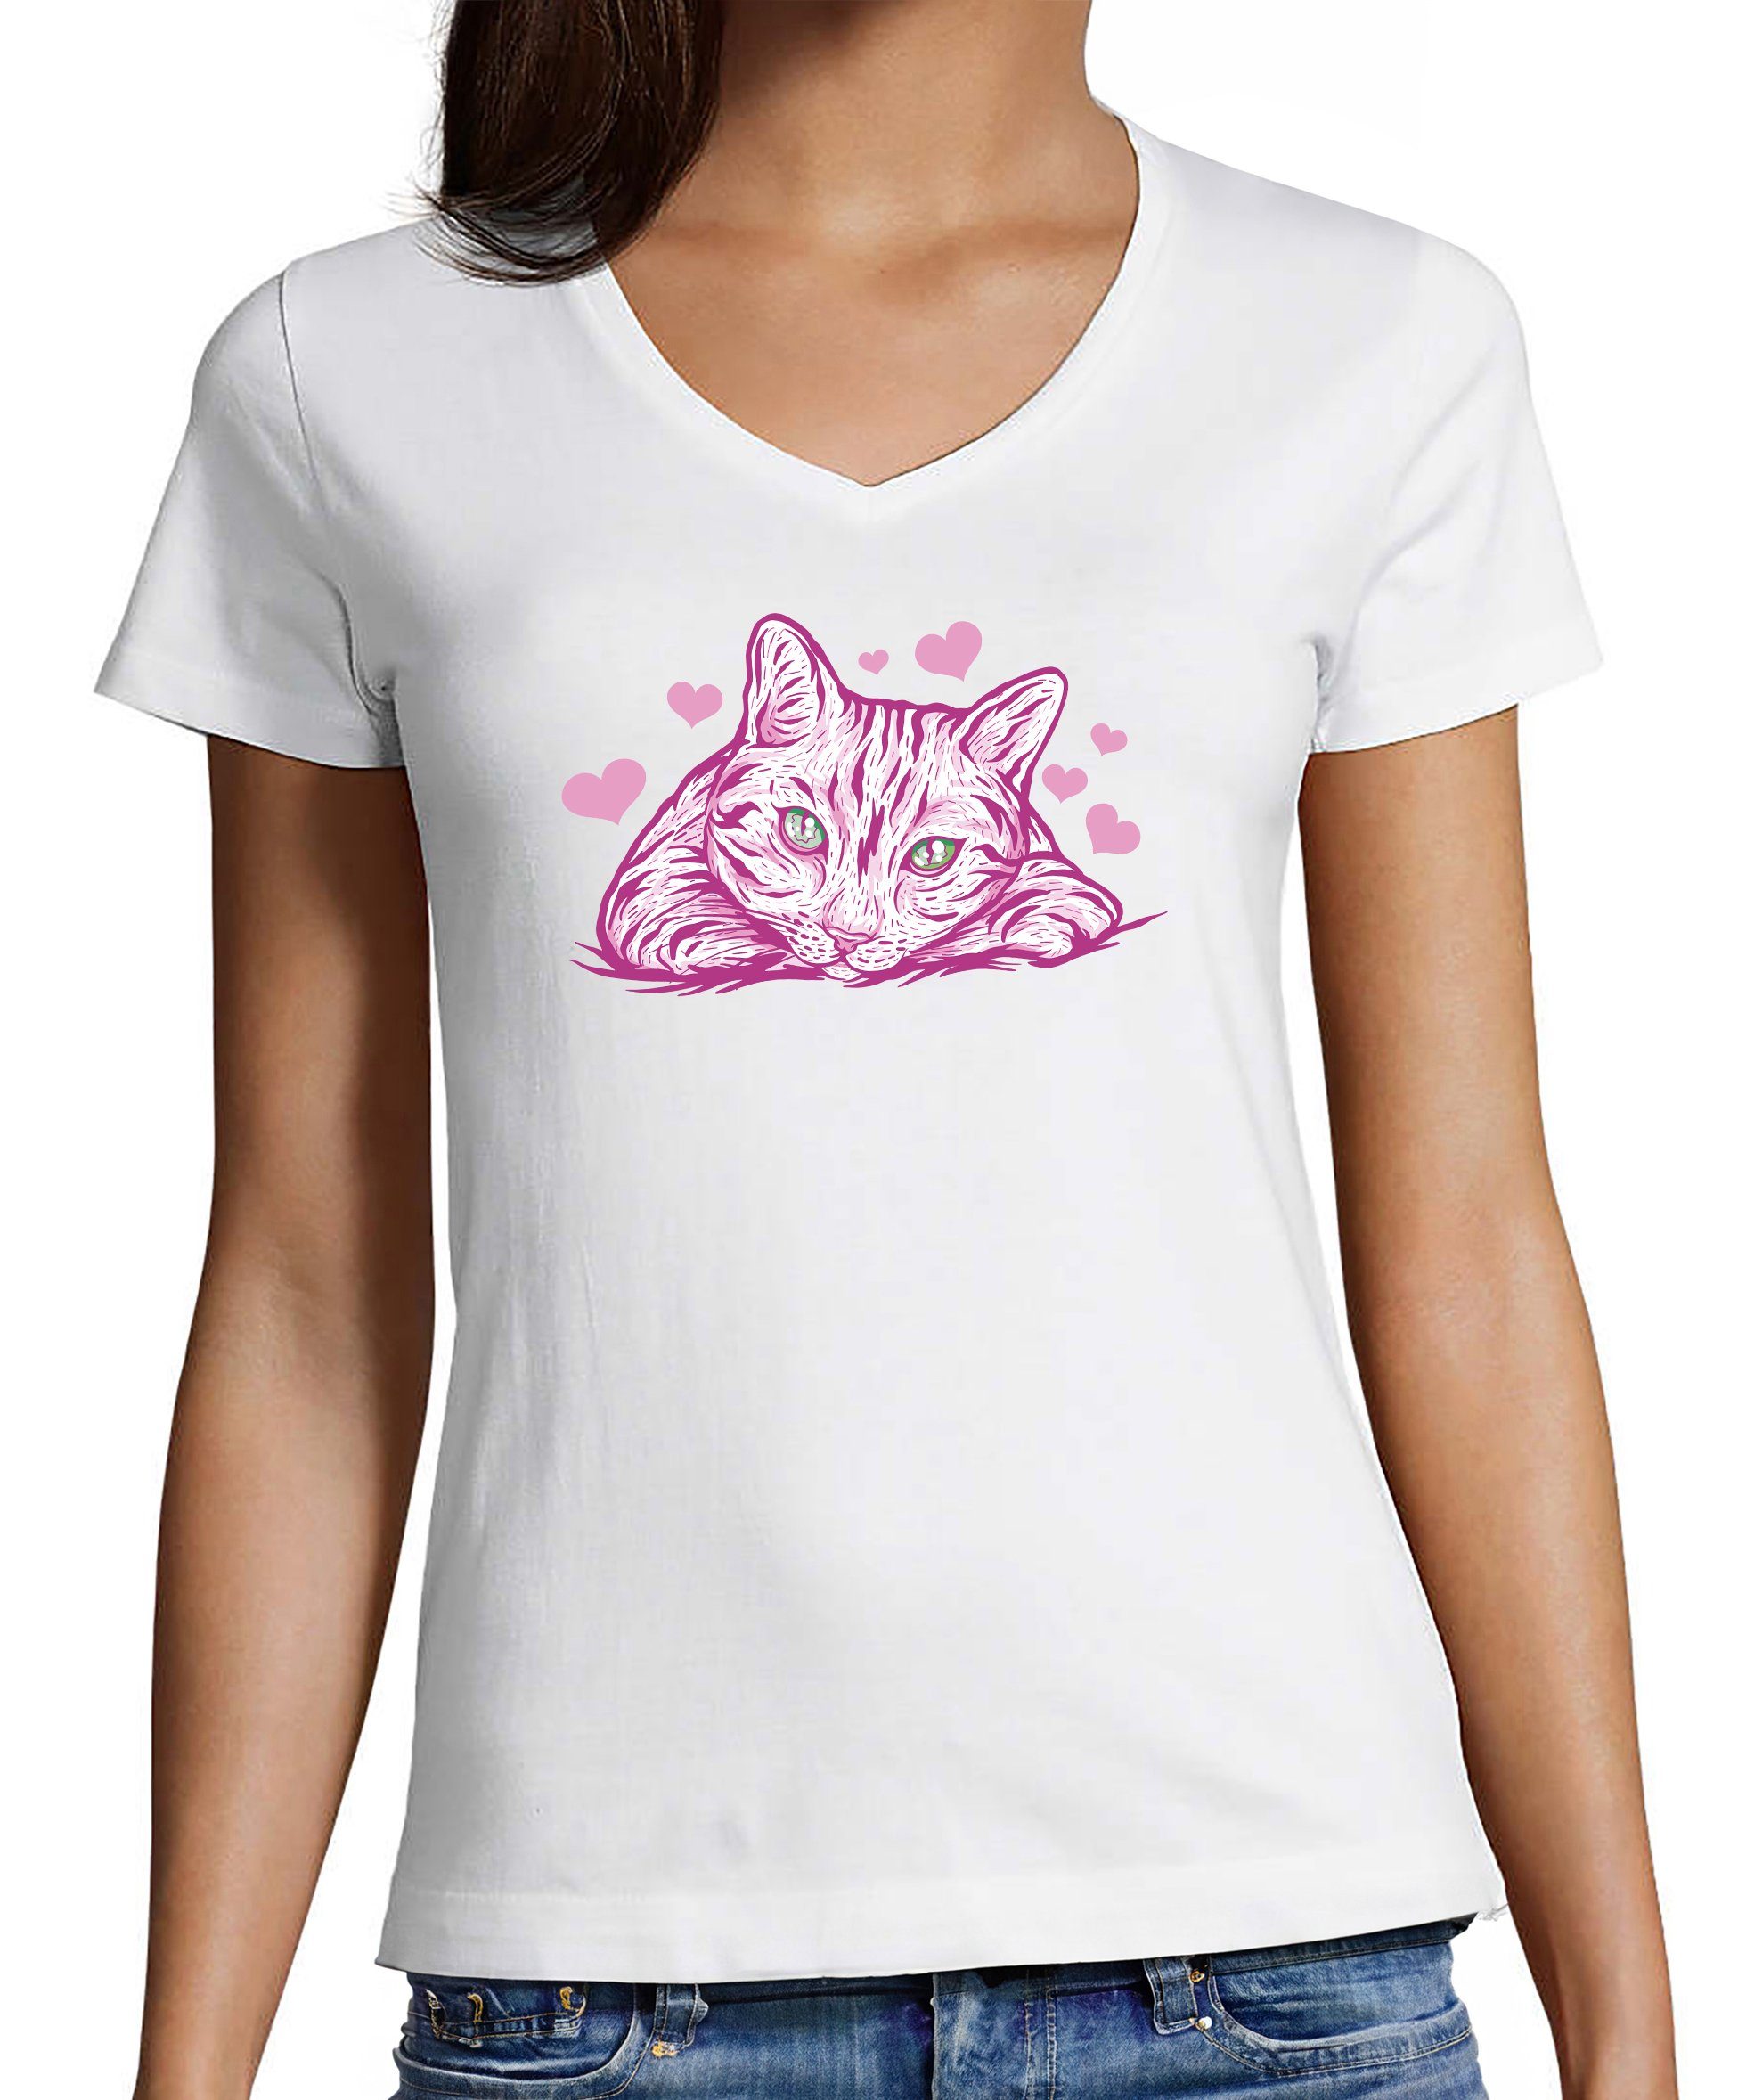 Herzen Fit, mit mit Pinke Print Baumwollshirt weiss T-Shirt i122 bedruckt Katze Aufdruck, MyDesign24 Damen Katzen - Shirt Slim